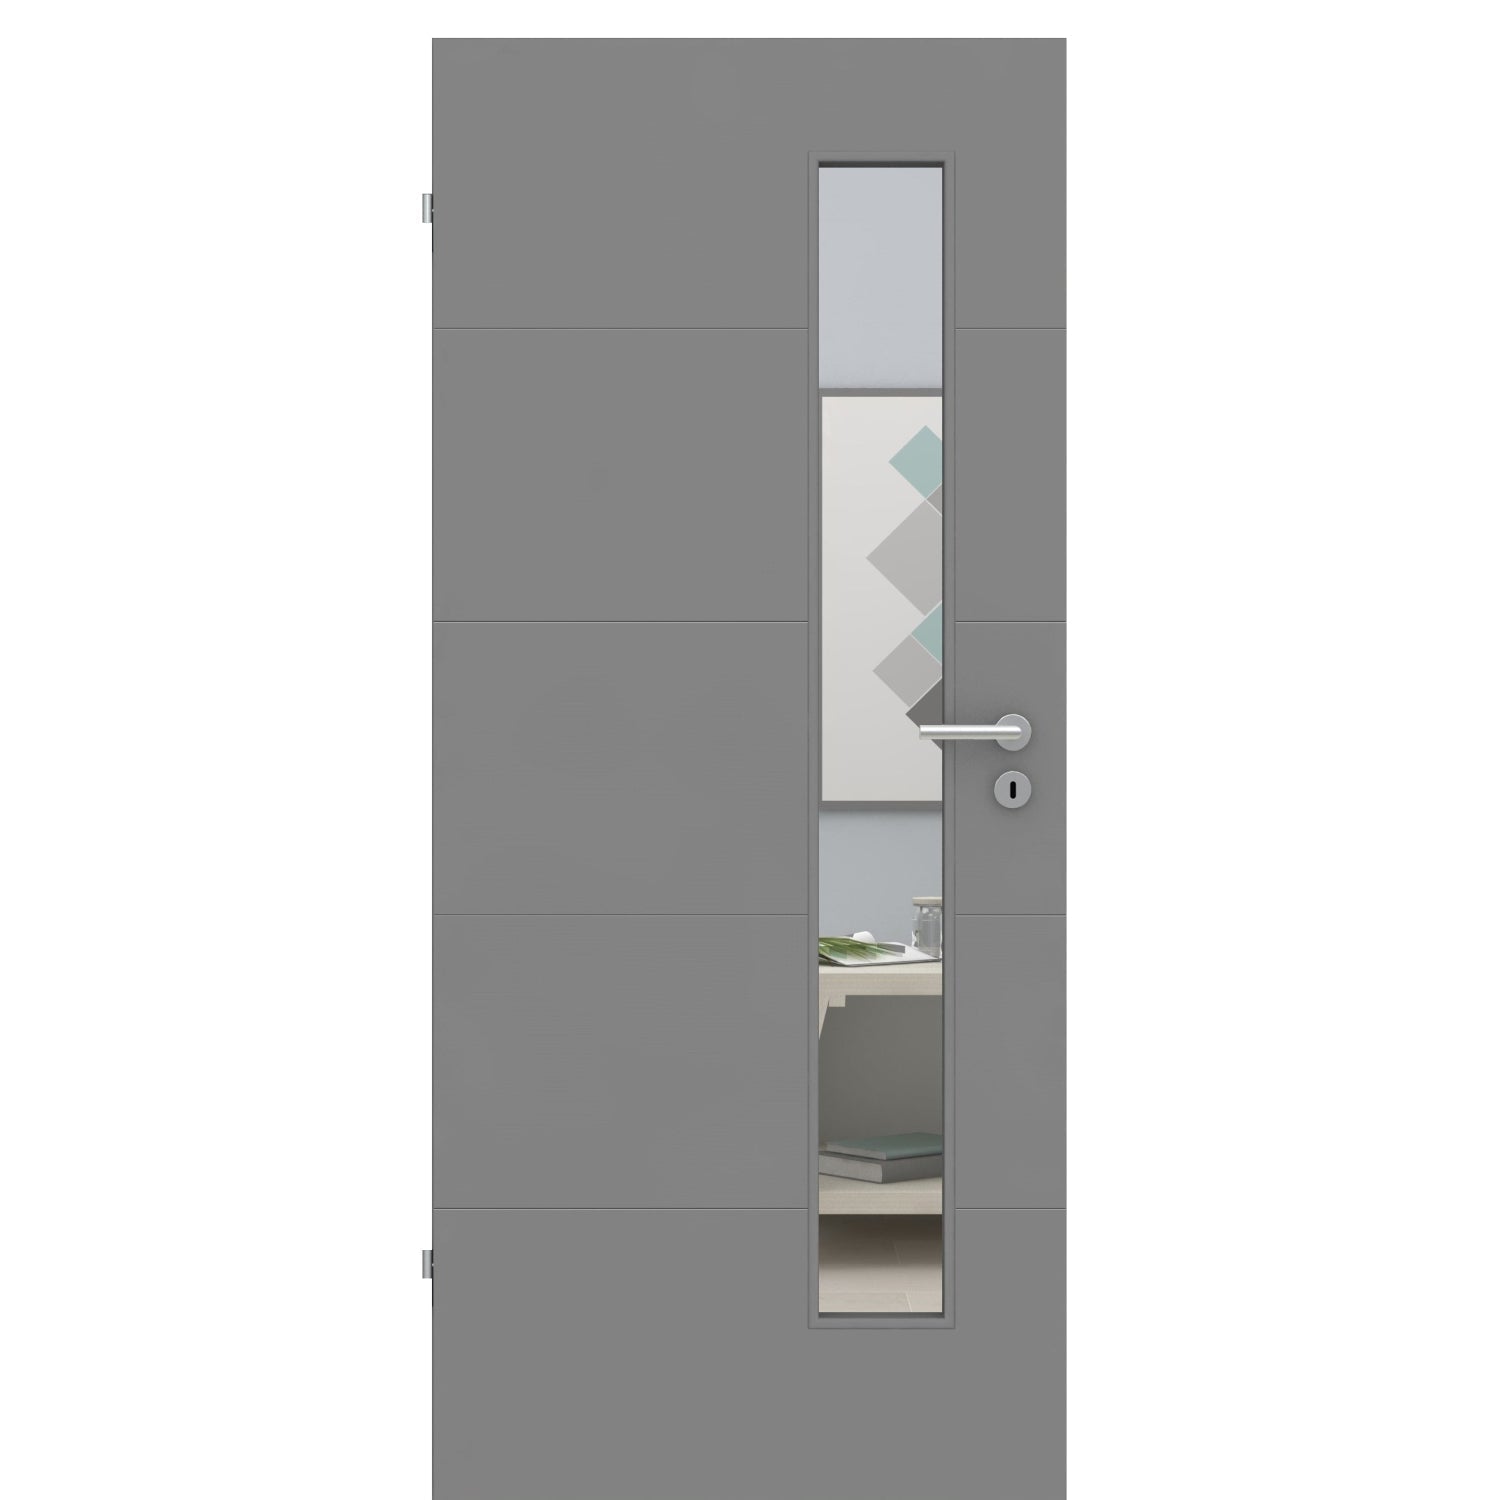 Zimmertür mit Lichtausschnitt grau 4 Rillen quer Designkante - Modell Designtür Q47LAS